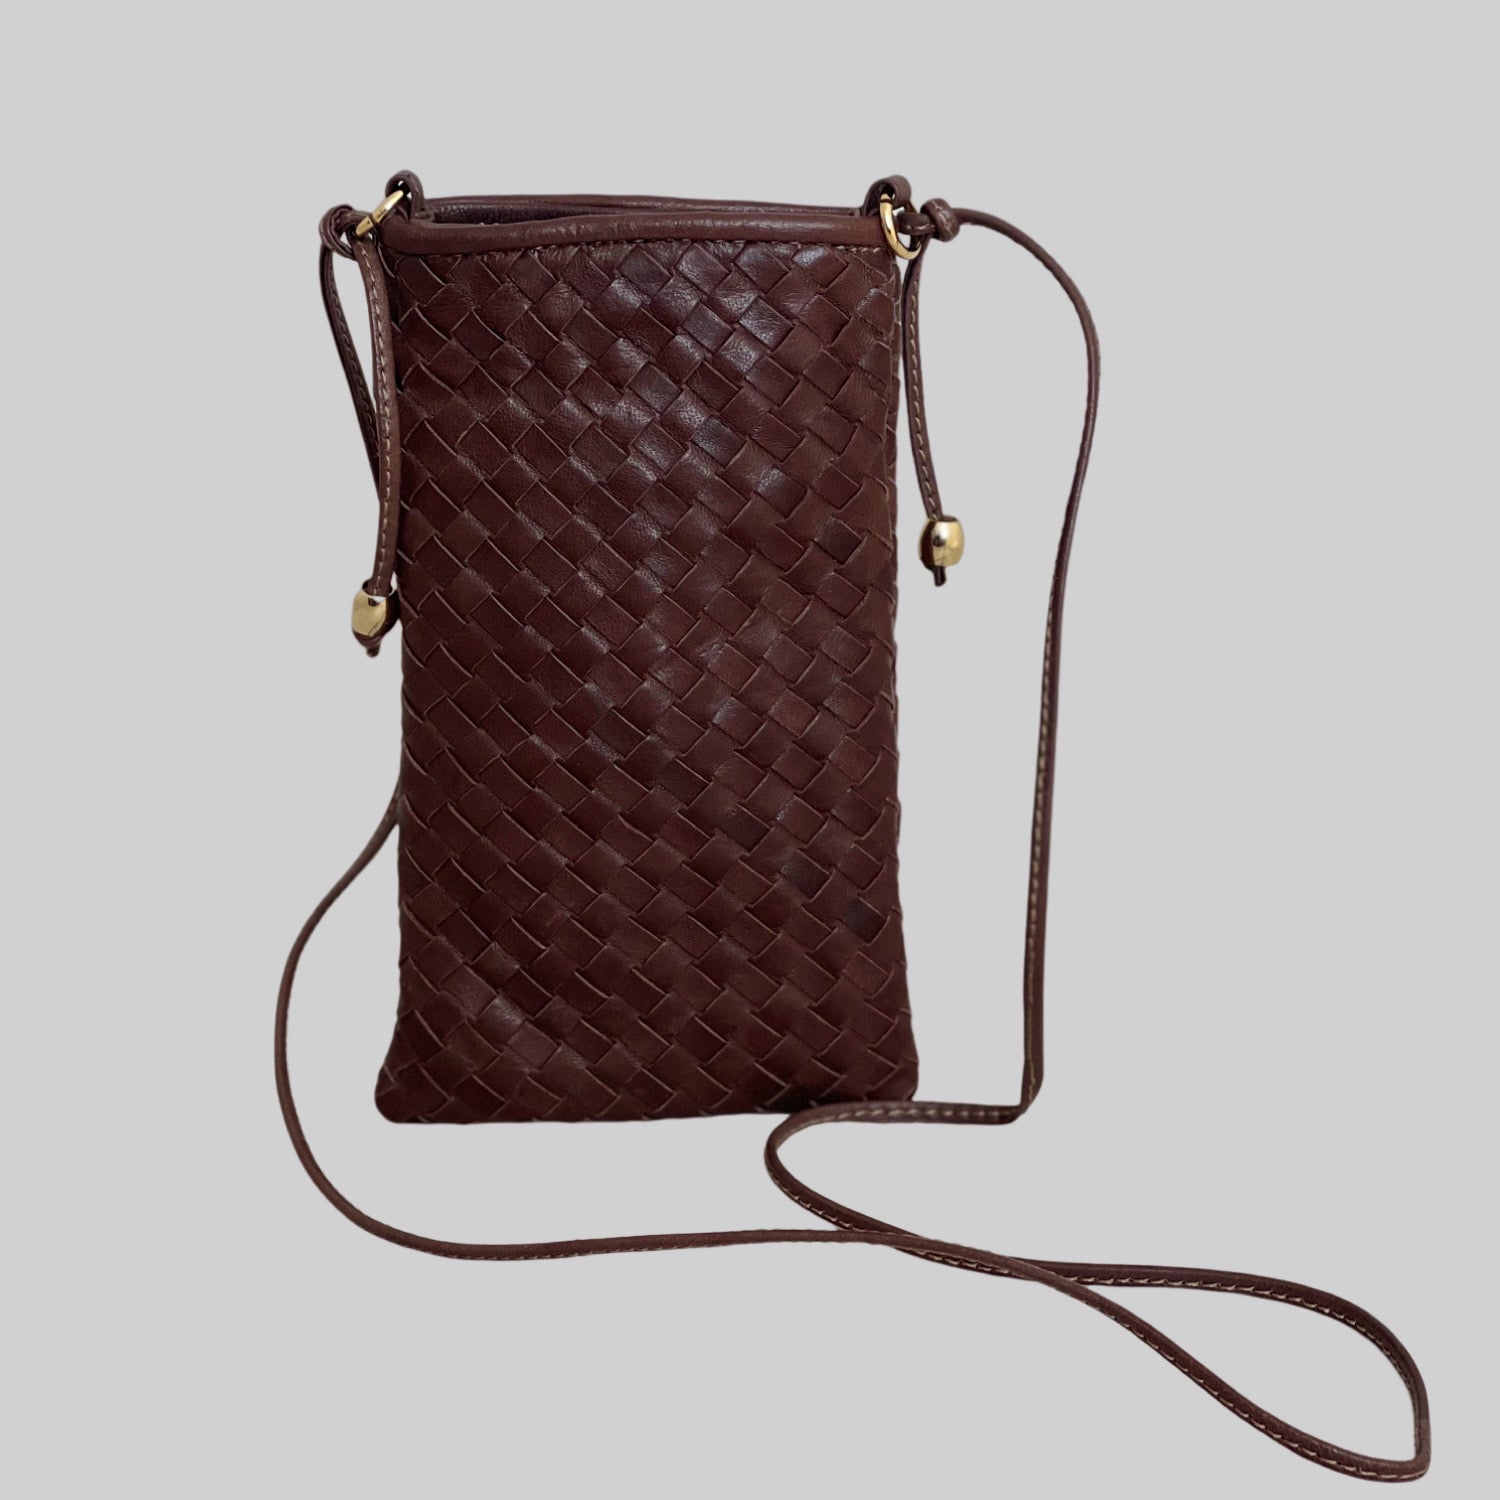 En Ribichini Pocket i brun, en elegant, liten skinnveske ideell for mobil, kredittkort og hemmelige notater.